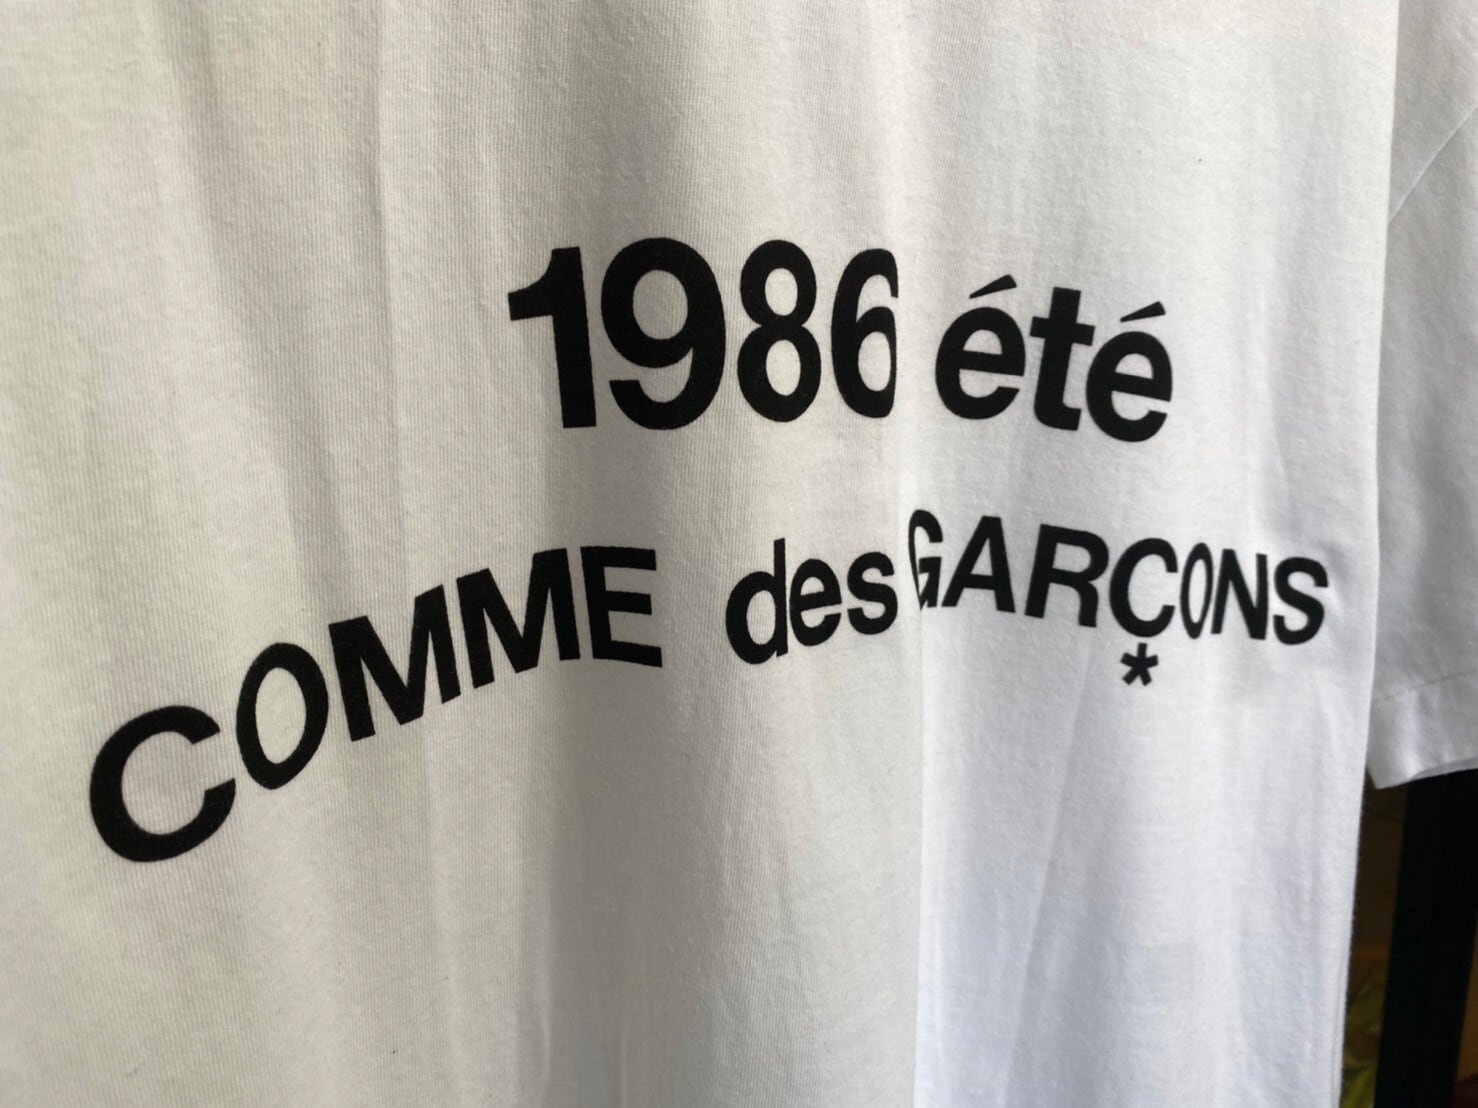 コムデギャルソン CDG 1986 ete Tシャツ 白/ホワイト